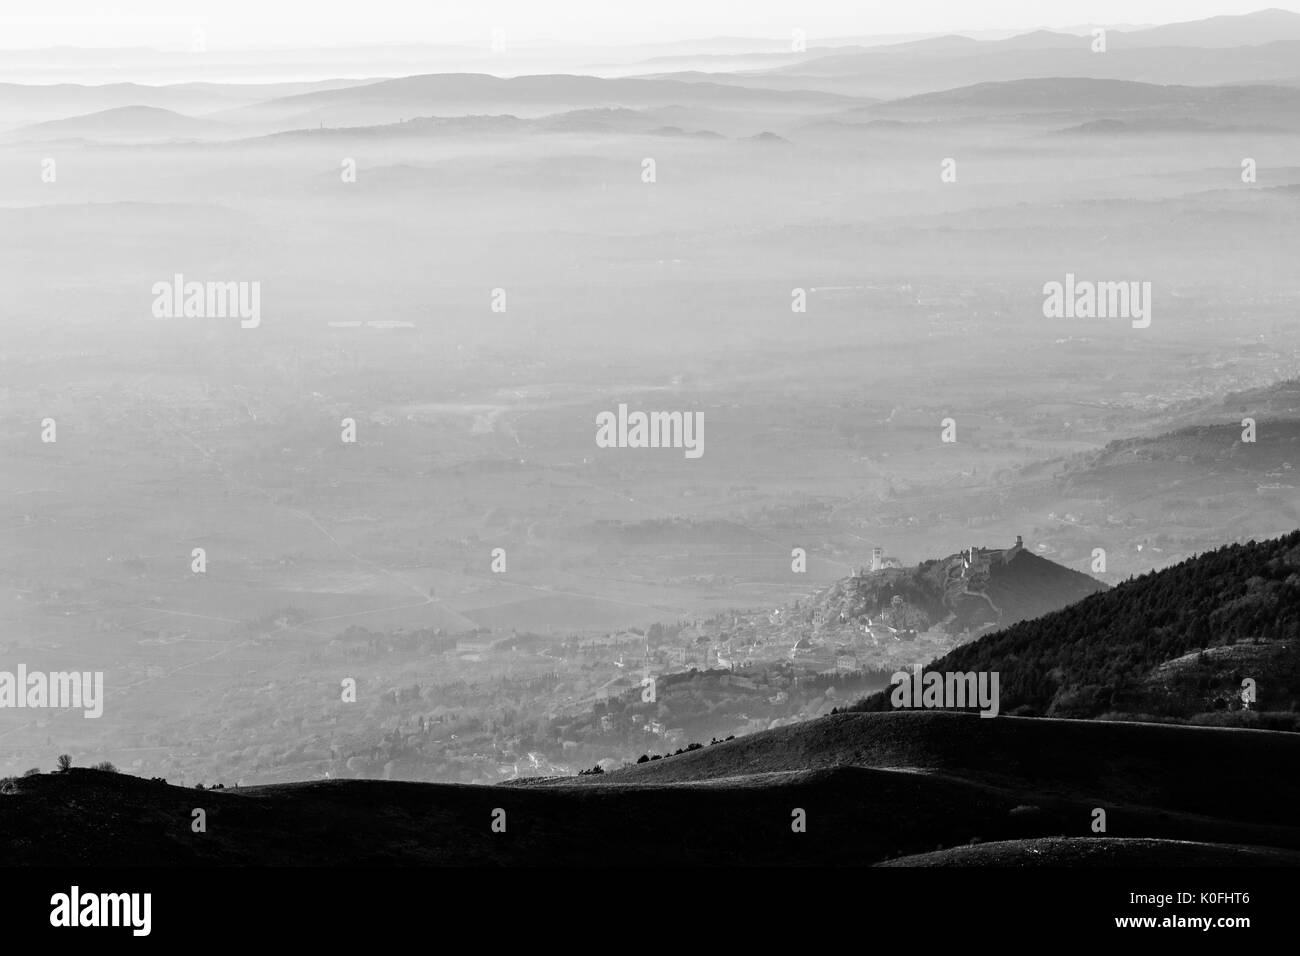 Una veduta aerea della città di Assisi e san.francesco chiesa sopra un mare di nebbia, con lontane colline in background Foto Stock